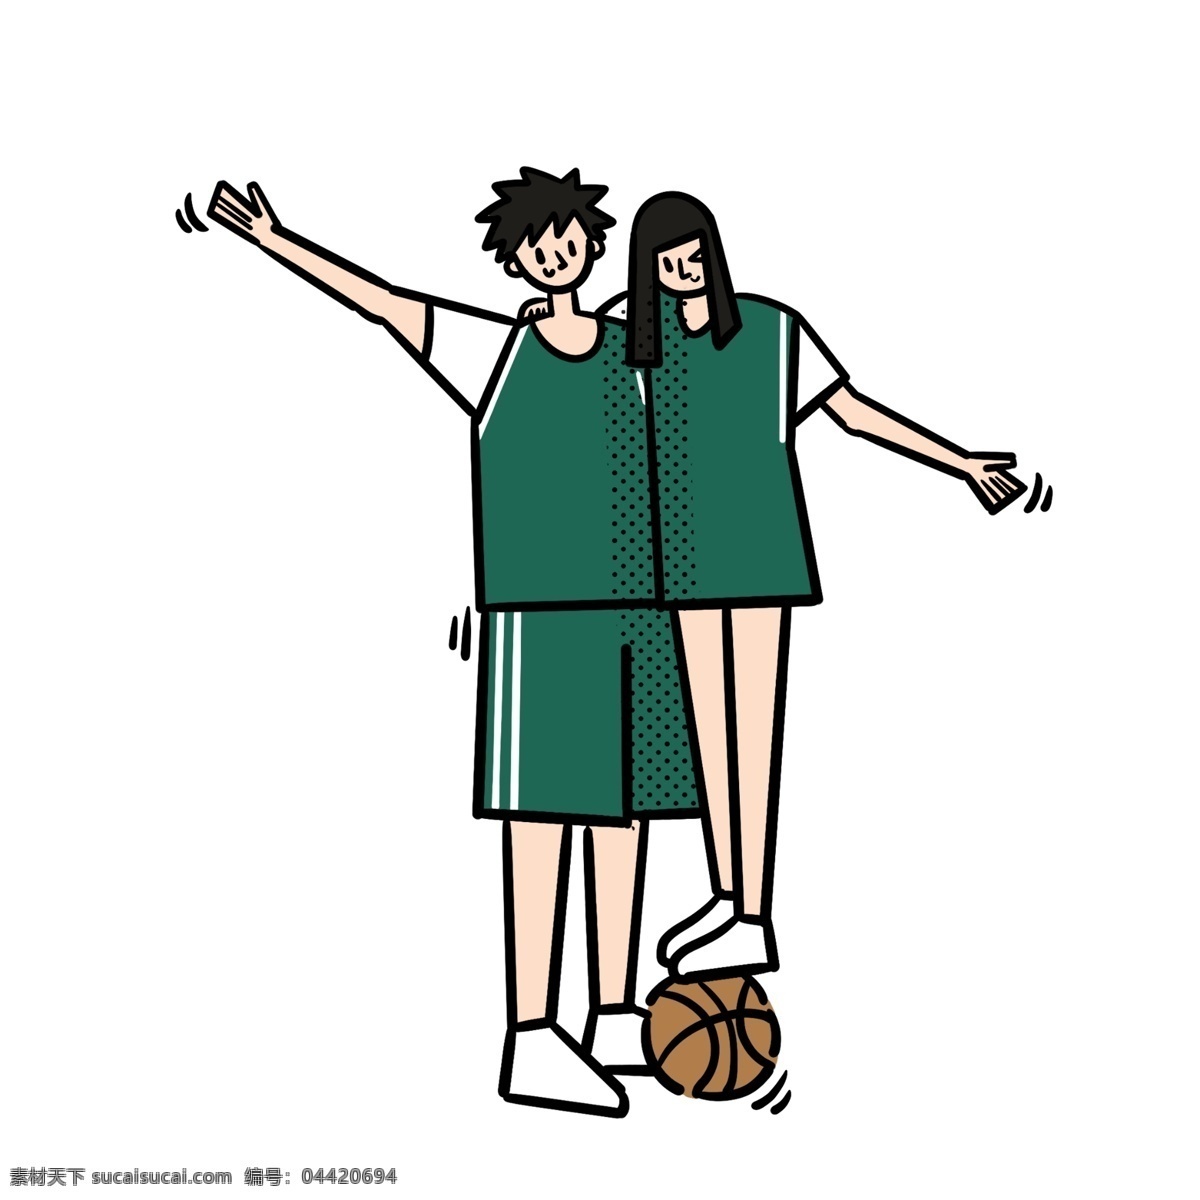 卡通 矢量 免 抠 扁平 可爱 篮球 情侣 免抠 打篮球 男生 绿色 篮球衣 运动 快乐 开心 运球 阳光 活力 女生